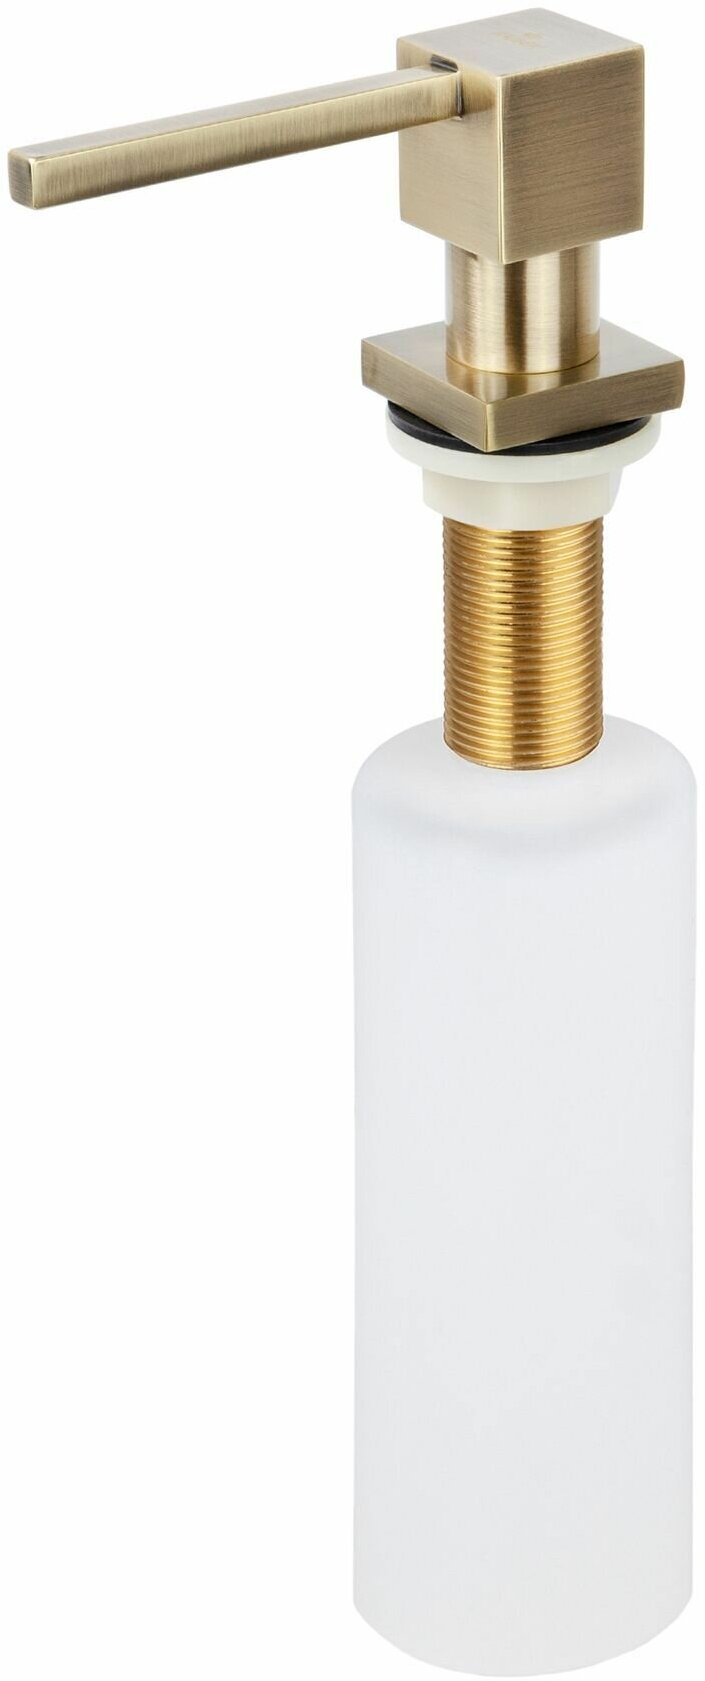 Встраиваемый диспенсер для жидкого мыла, дозатор для моющих средств, Насос-дозатор для жидкости встроенный в мойку 350 мл. KAISER KH-3021 цвет бронза/ латунь/пластик